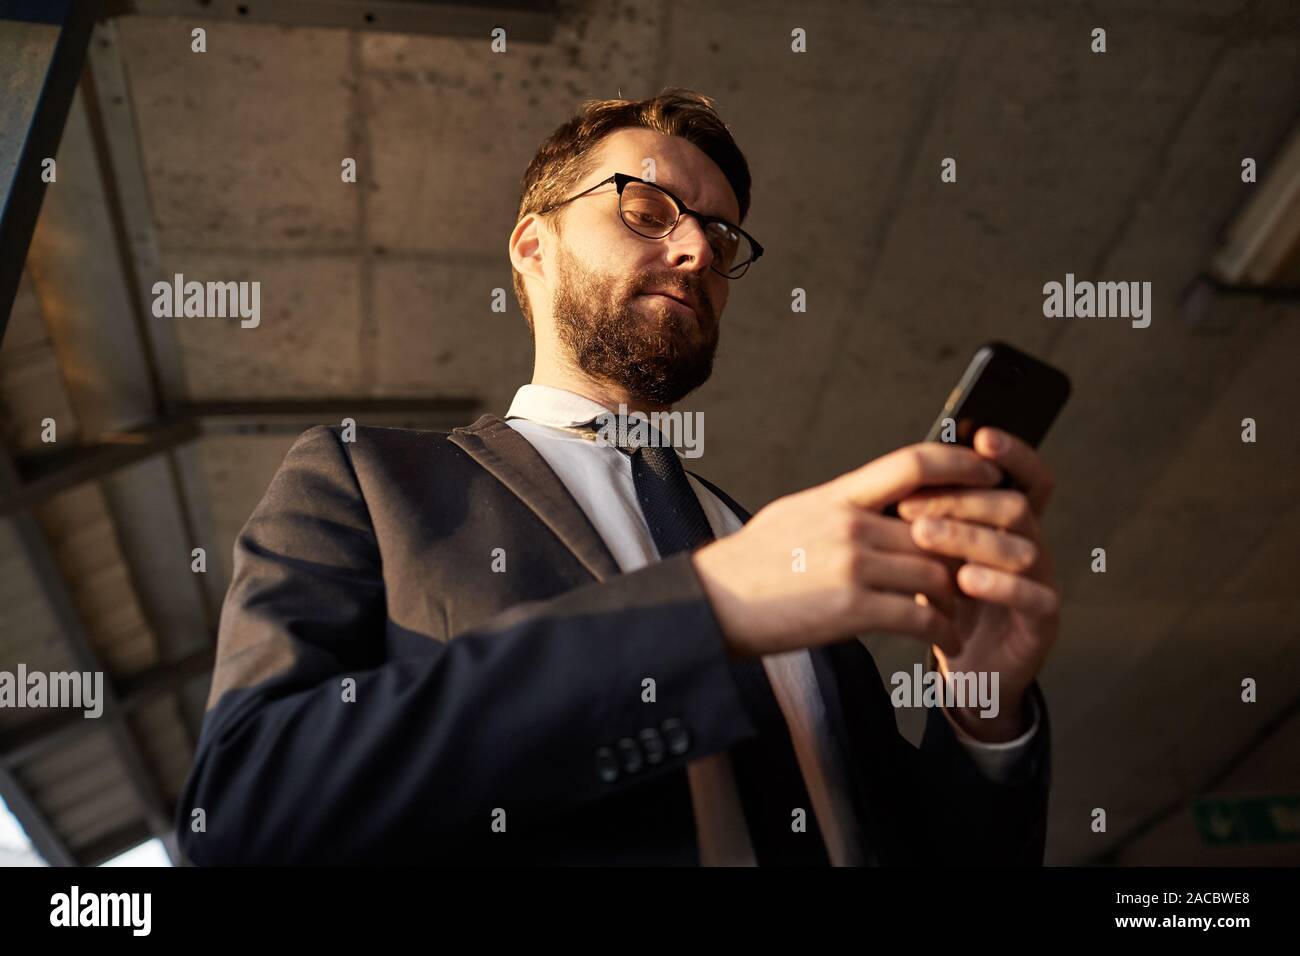 Low angle view of bearded man in suit l'article en ligne et de travail à l'aide de son téléphone portable Banque D'Images